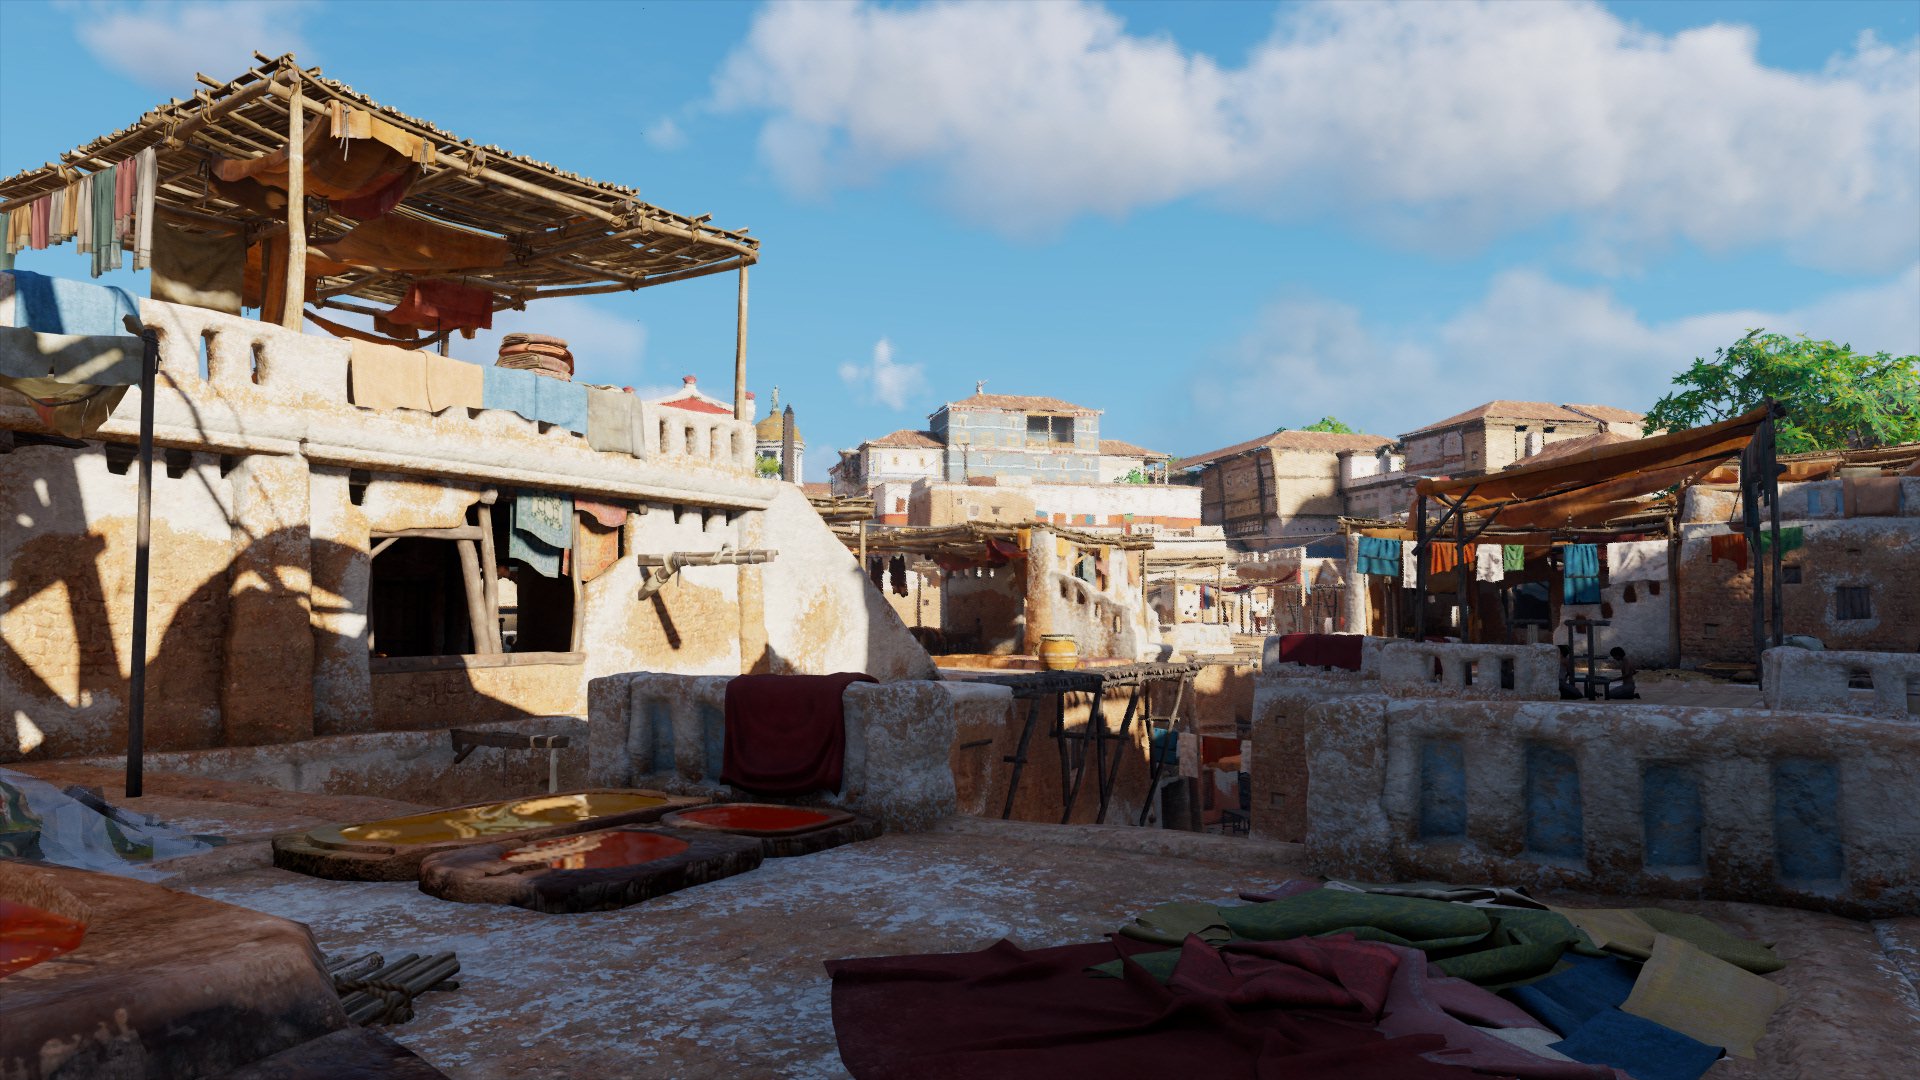 Ob dreckige Wäsche, spielende Kinder oder eine Färberei auf dem Dach: Oft sind die alltäglichen Szenen in Alexandria die, die am meisten faszinieren (Quelle: Assassin Creed: Origins, Ubisoft)